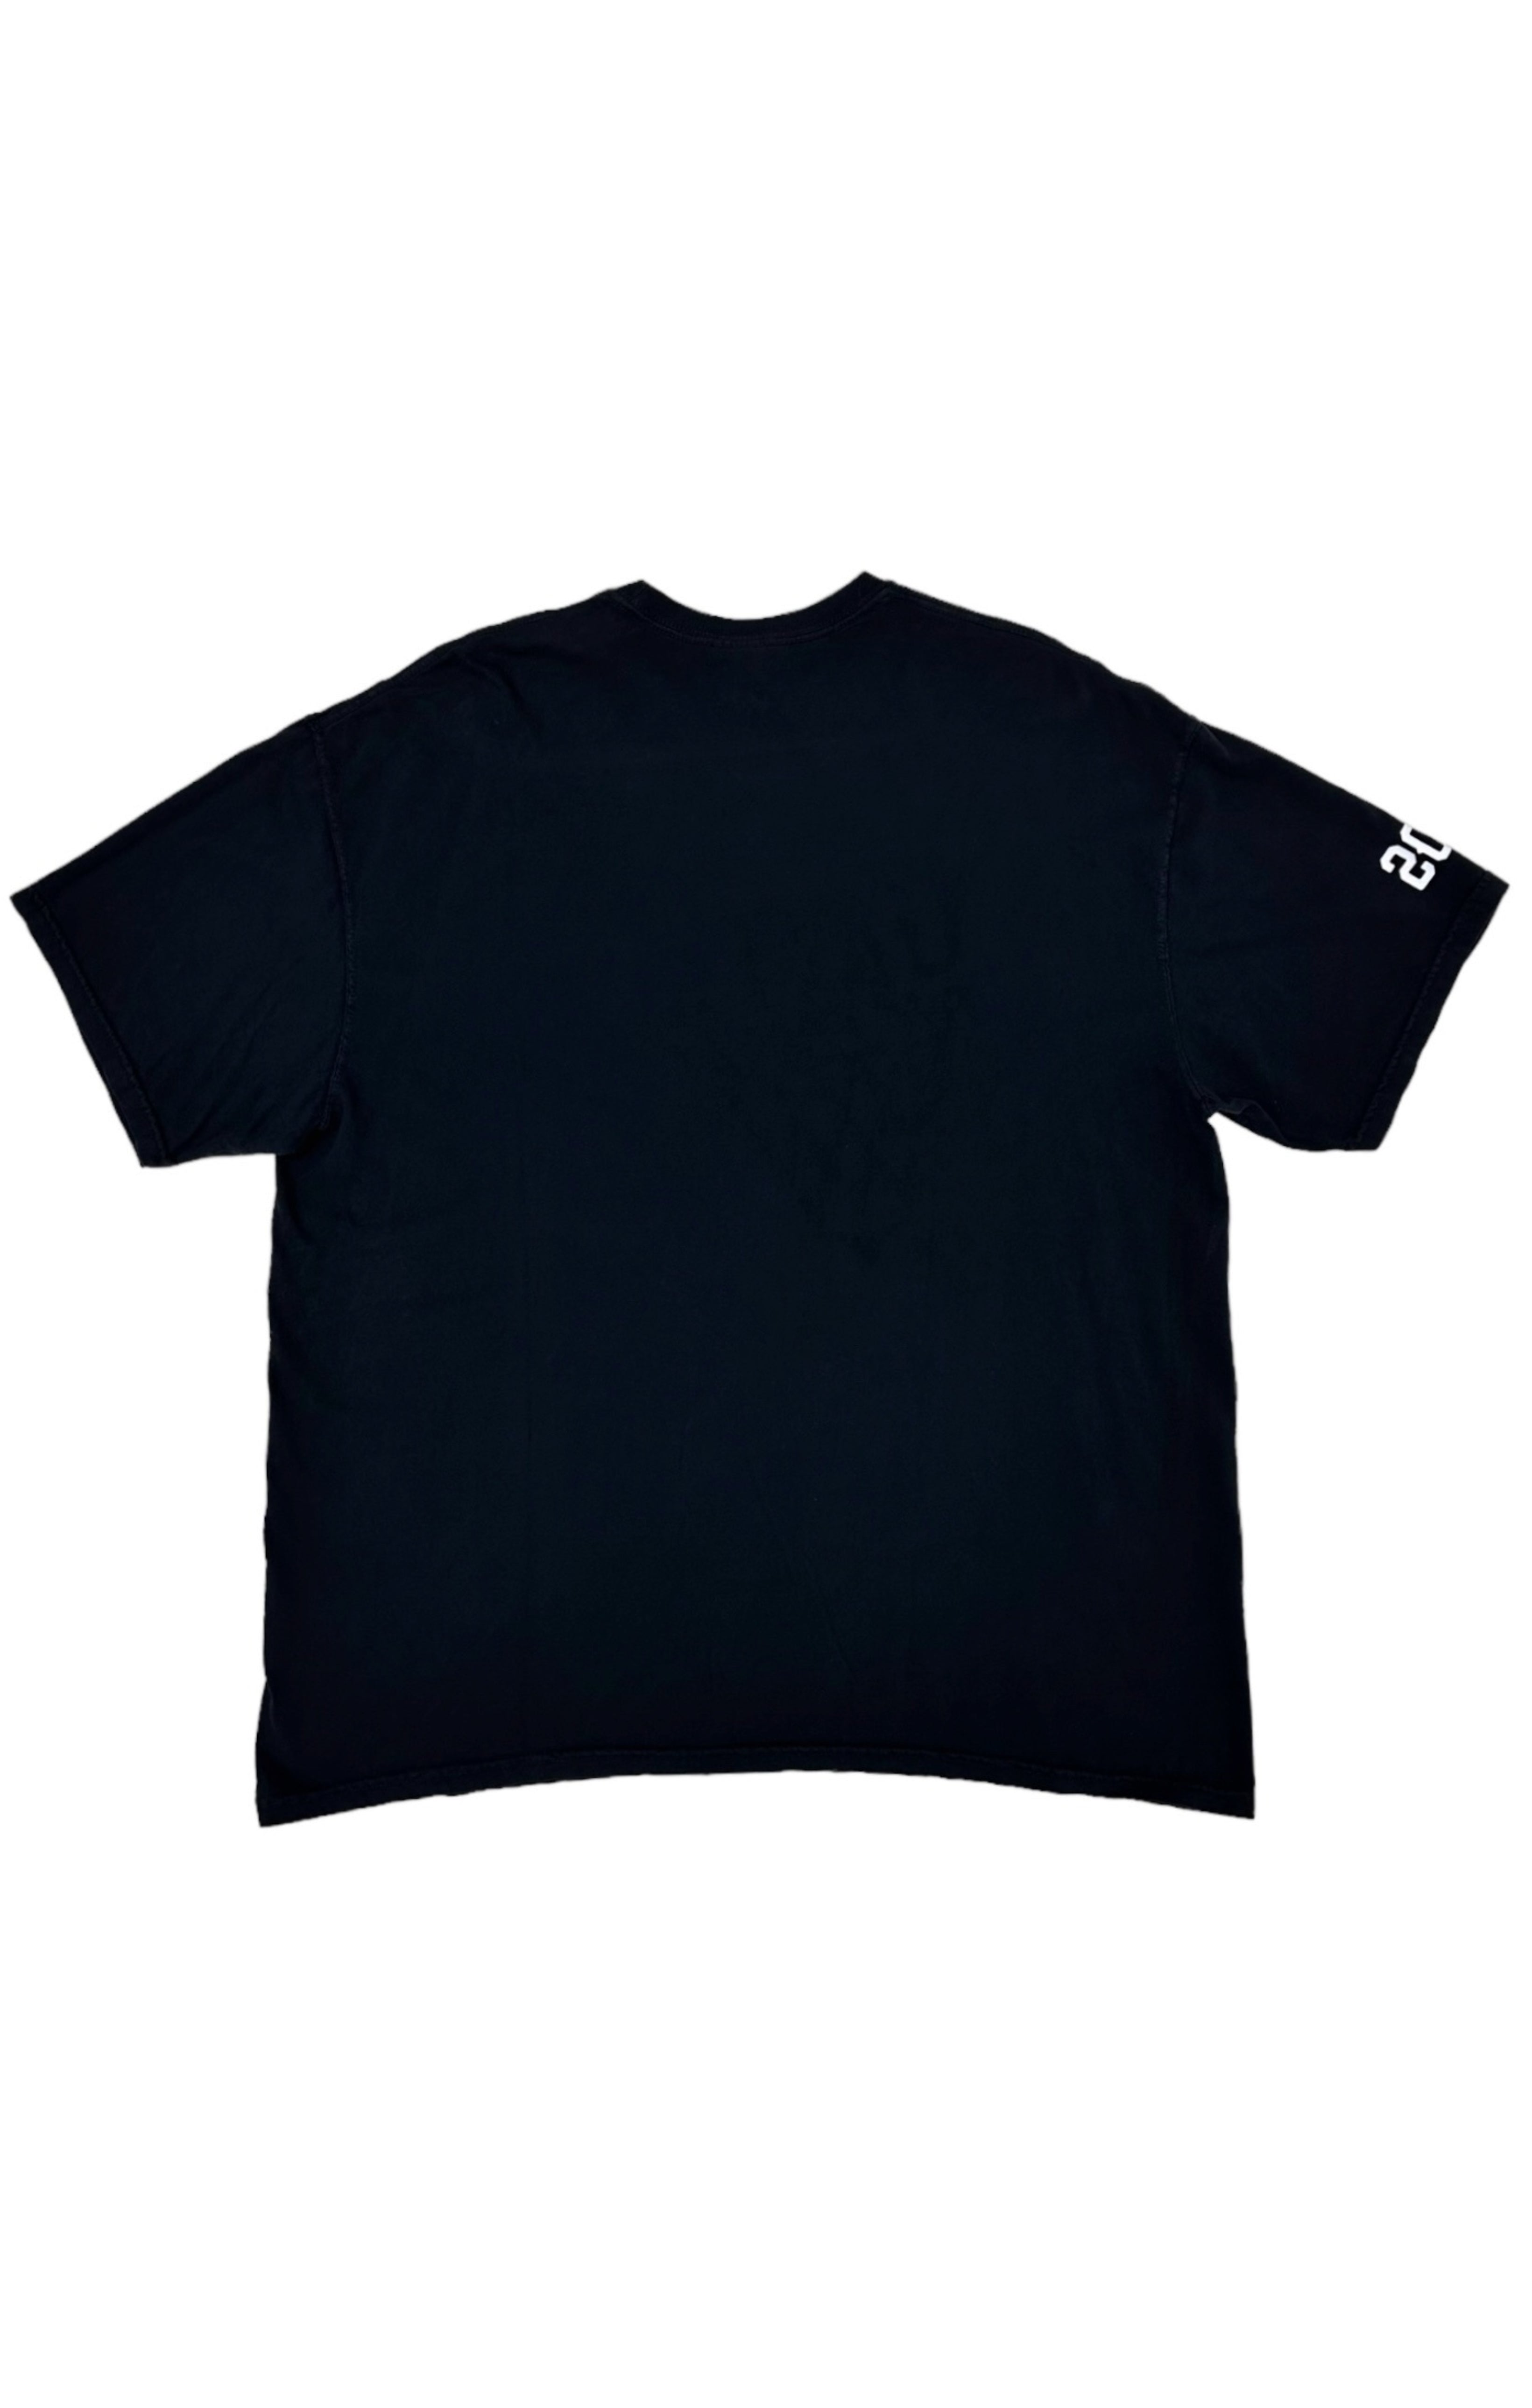 T-shirt Size: 2XL